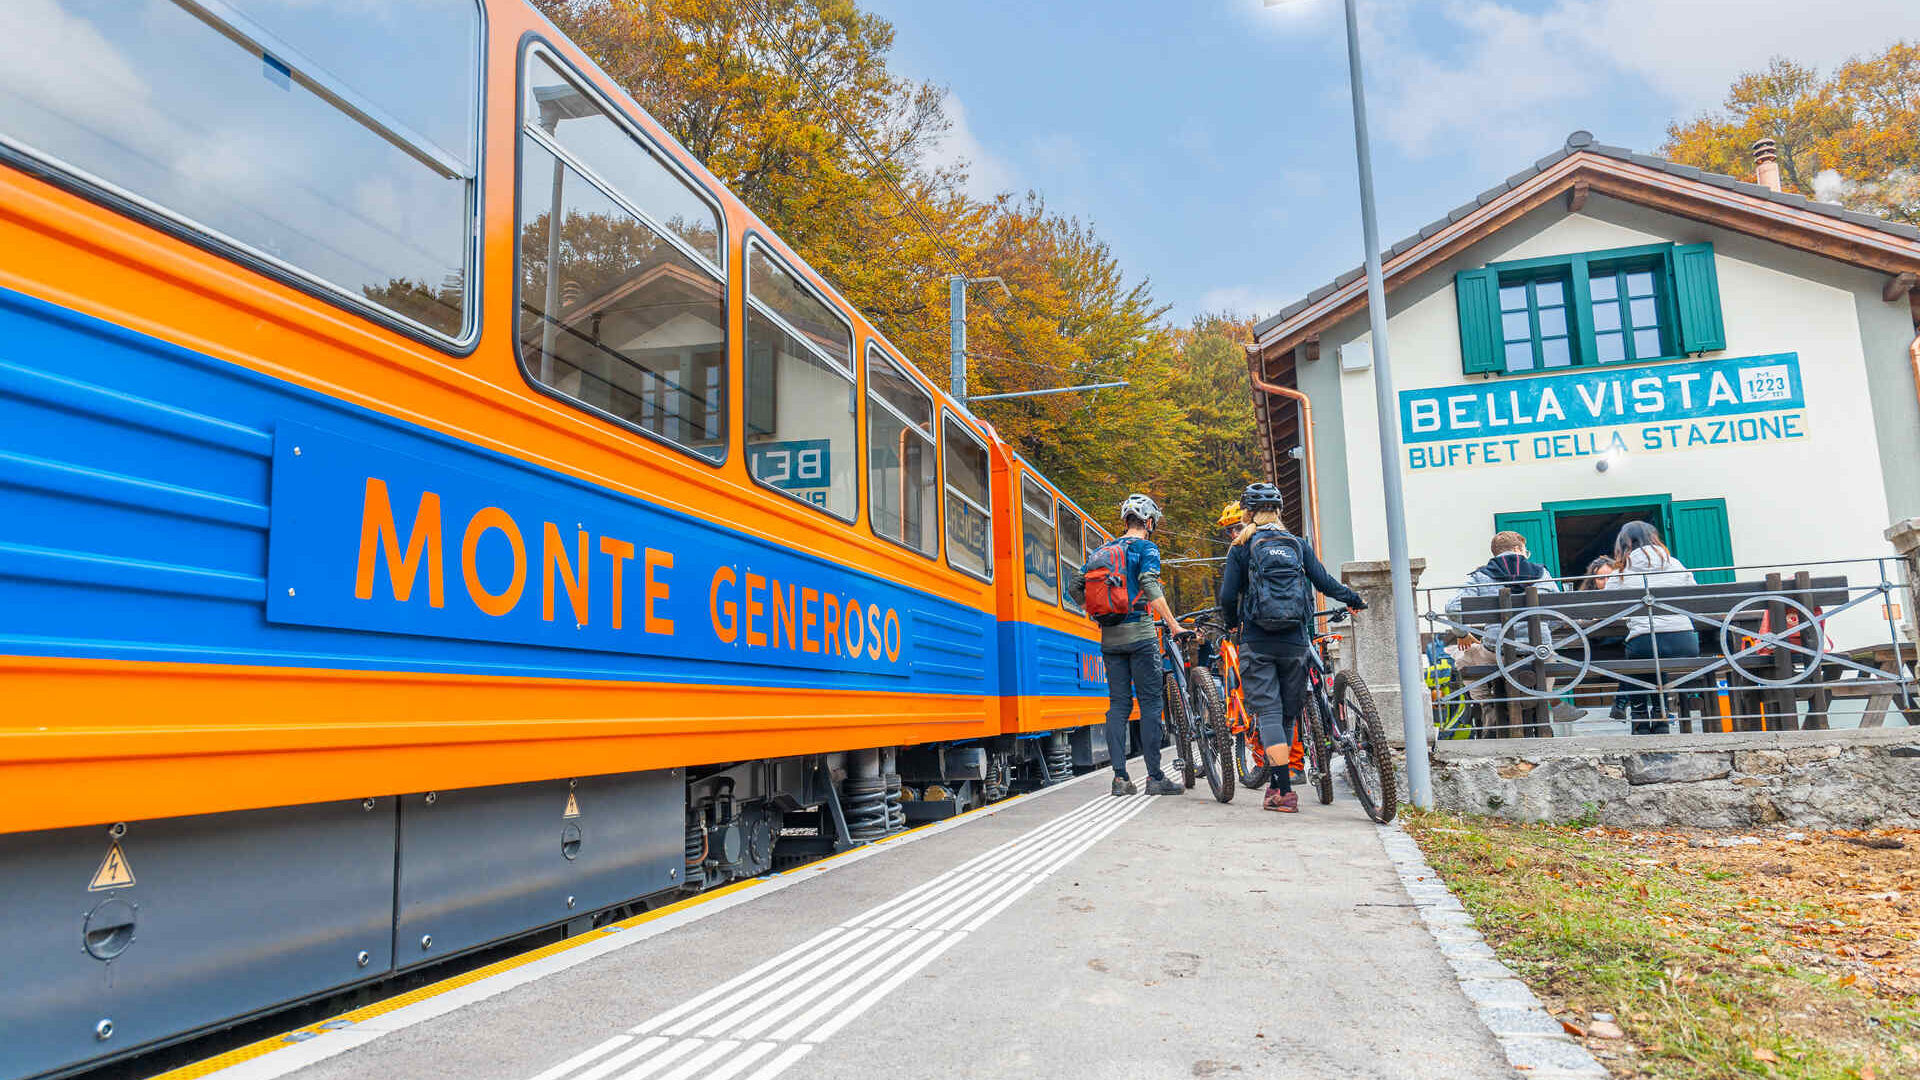 Монте Женеросо: төмөр замын сонгодог цэнхэр, улбар шар өнгийн вагонууд